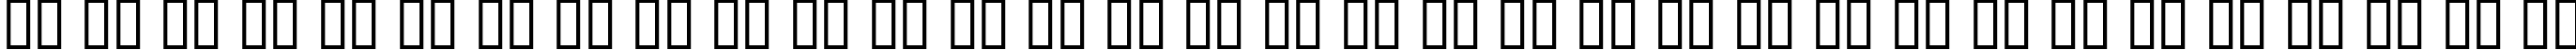 Пример написания русского алфавита шрифтом ActionIs